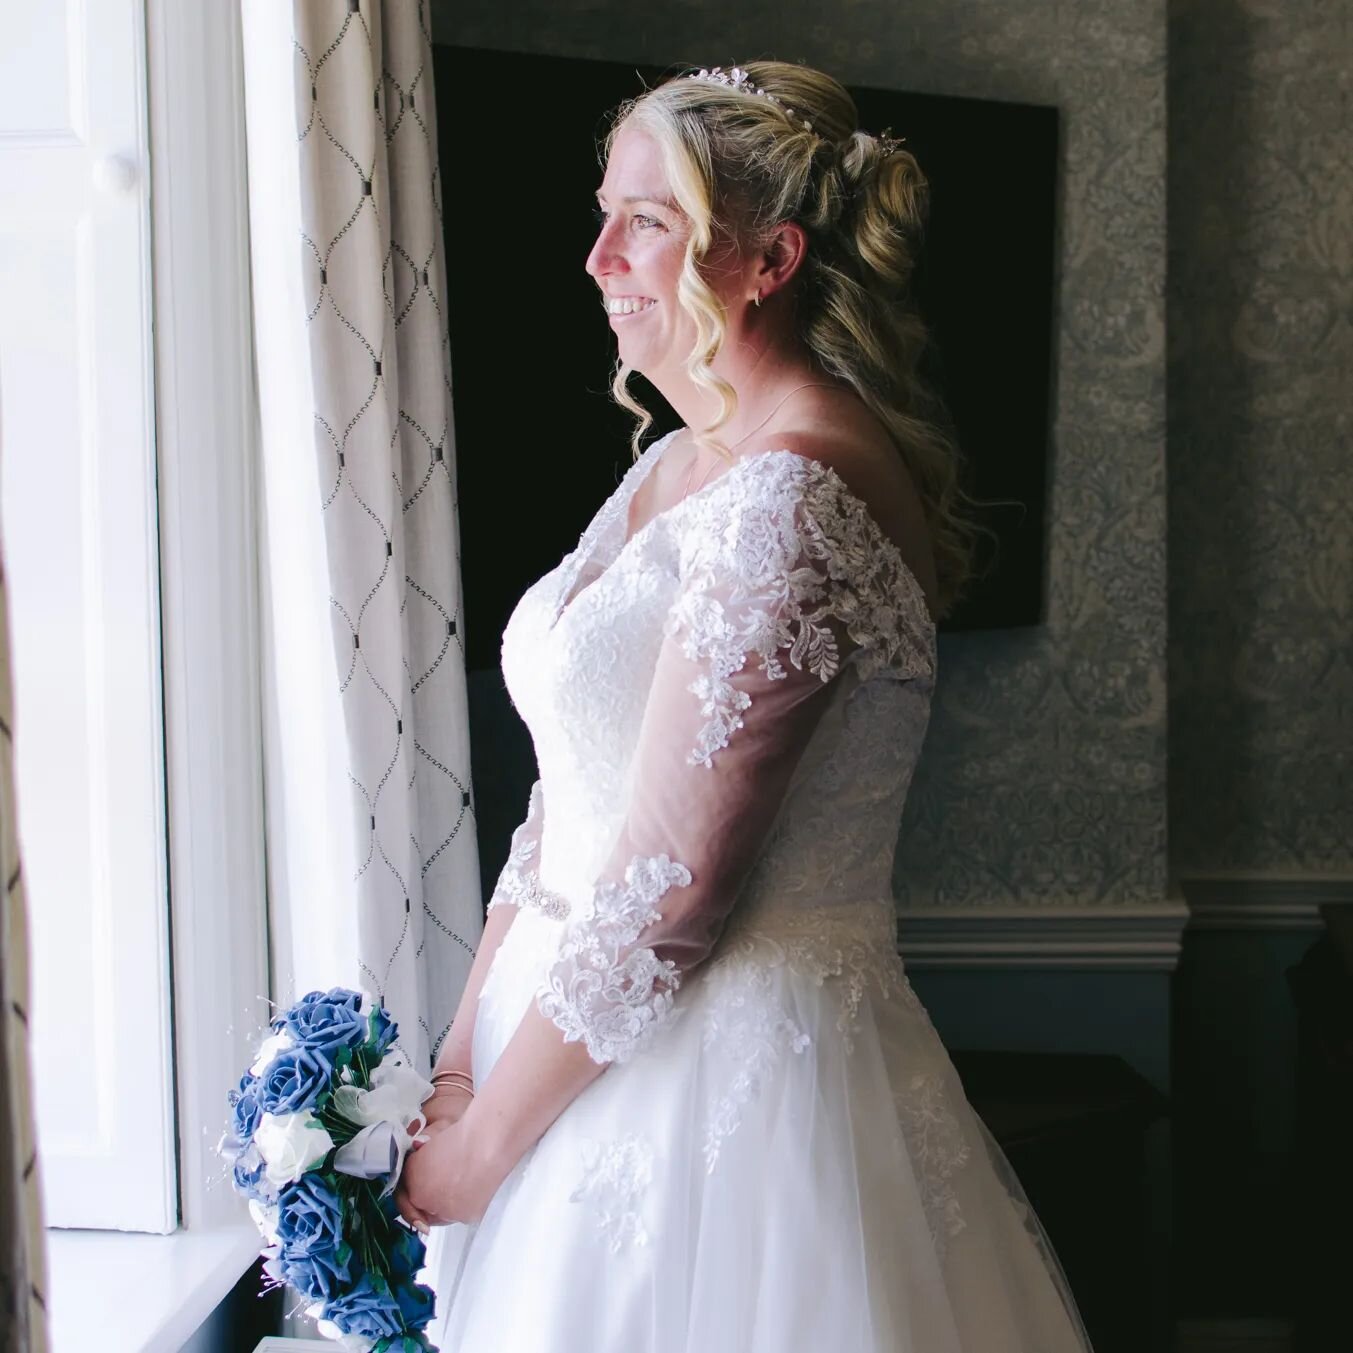 Rachel just before her wedding ceremony. 
#weddingsdevon #devonwedding #devonweddings #devonweddingphotographers #nikon #naturallightphotography